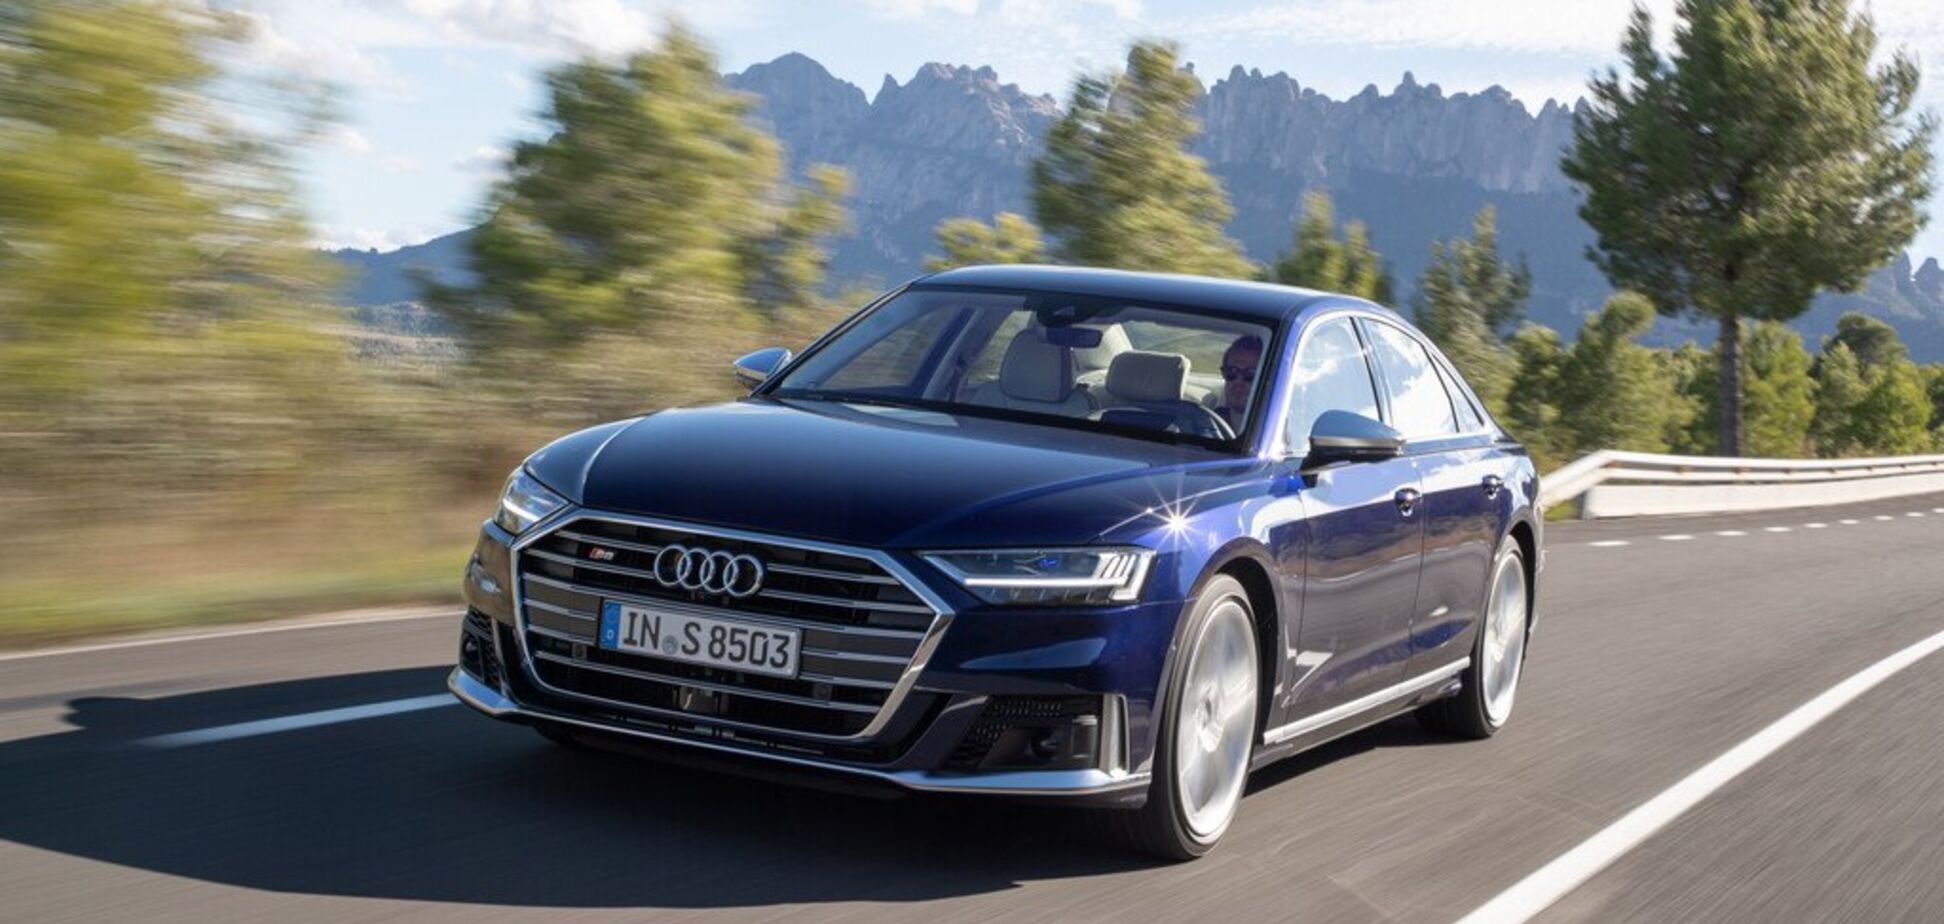 До 'сотні' за 3,8 секунди: новий Audi S8 здивував своєю динамікою